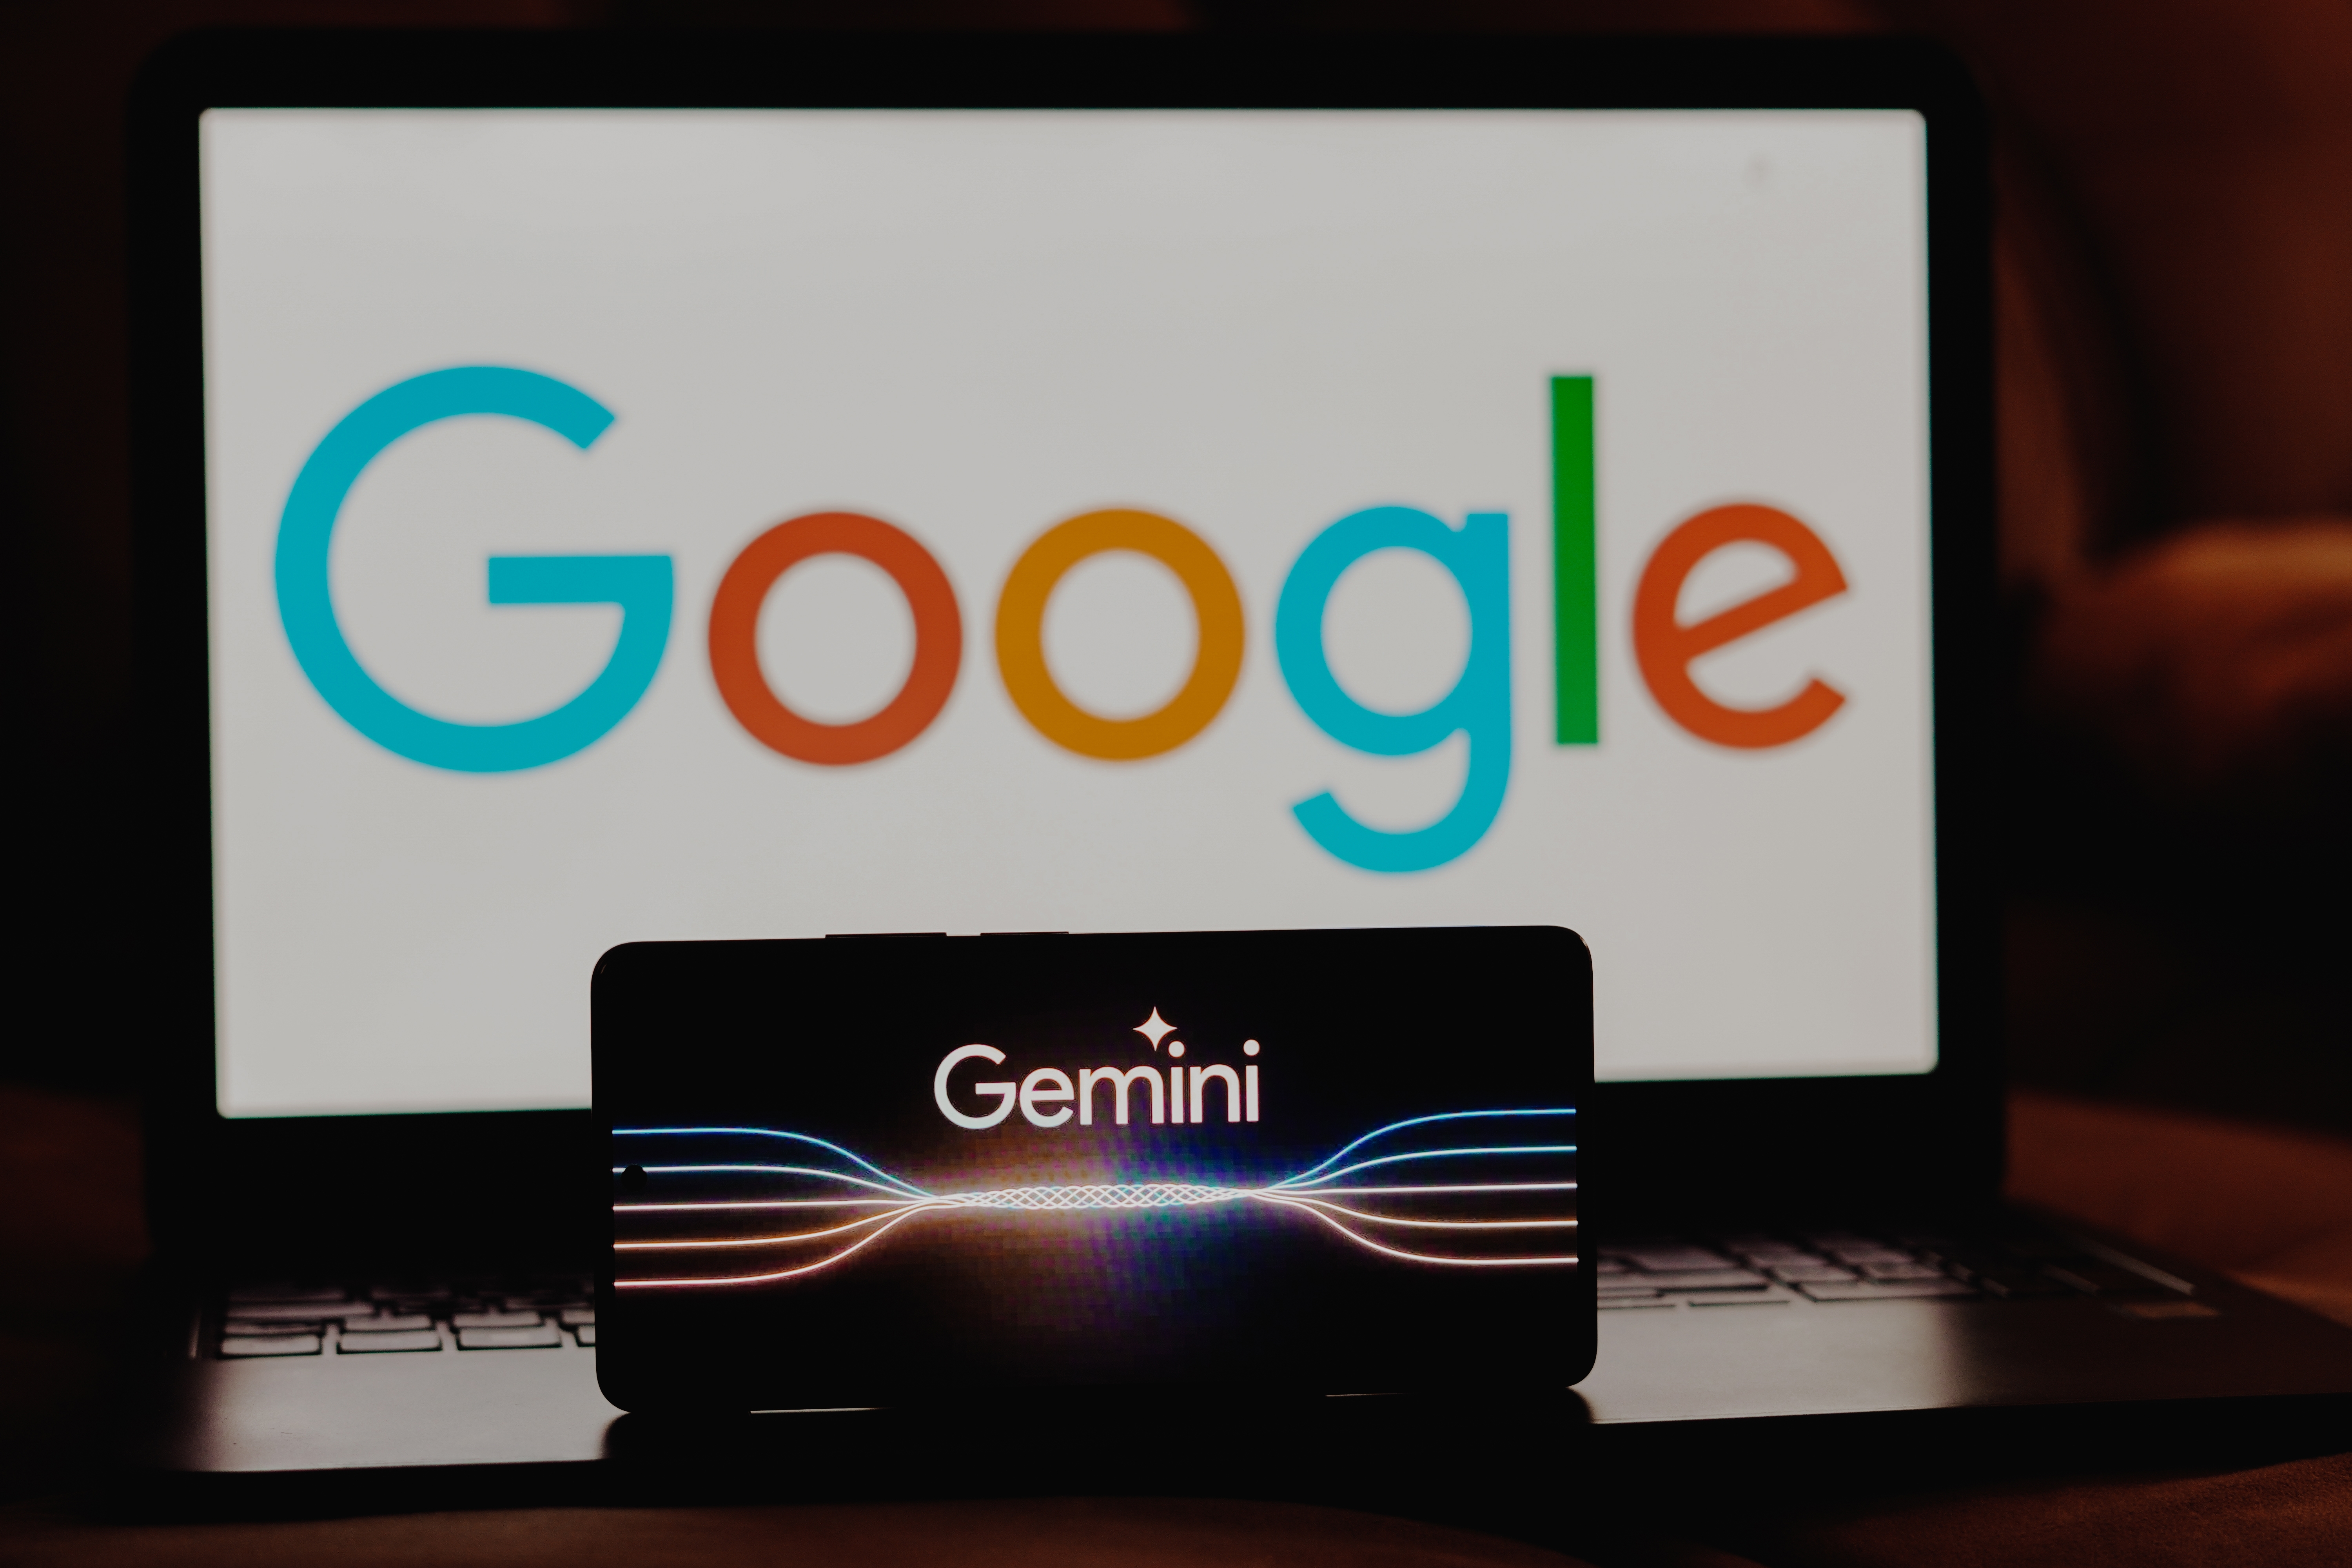 Google Gemini programmazione